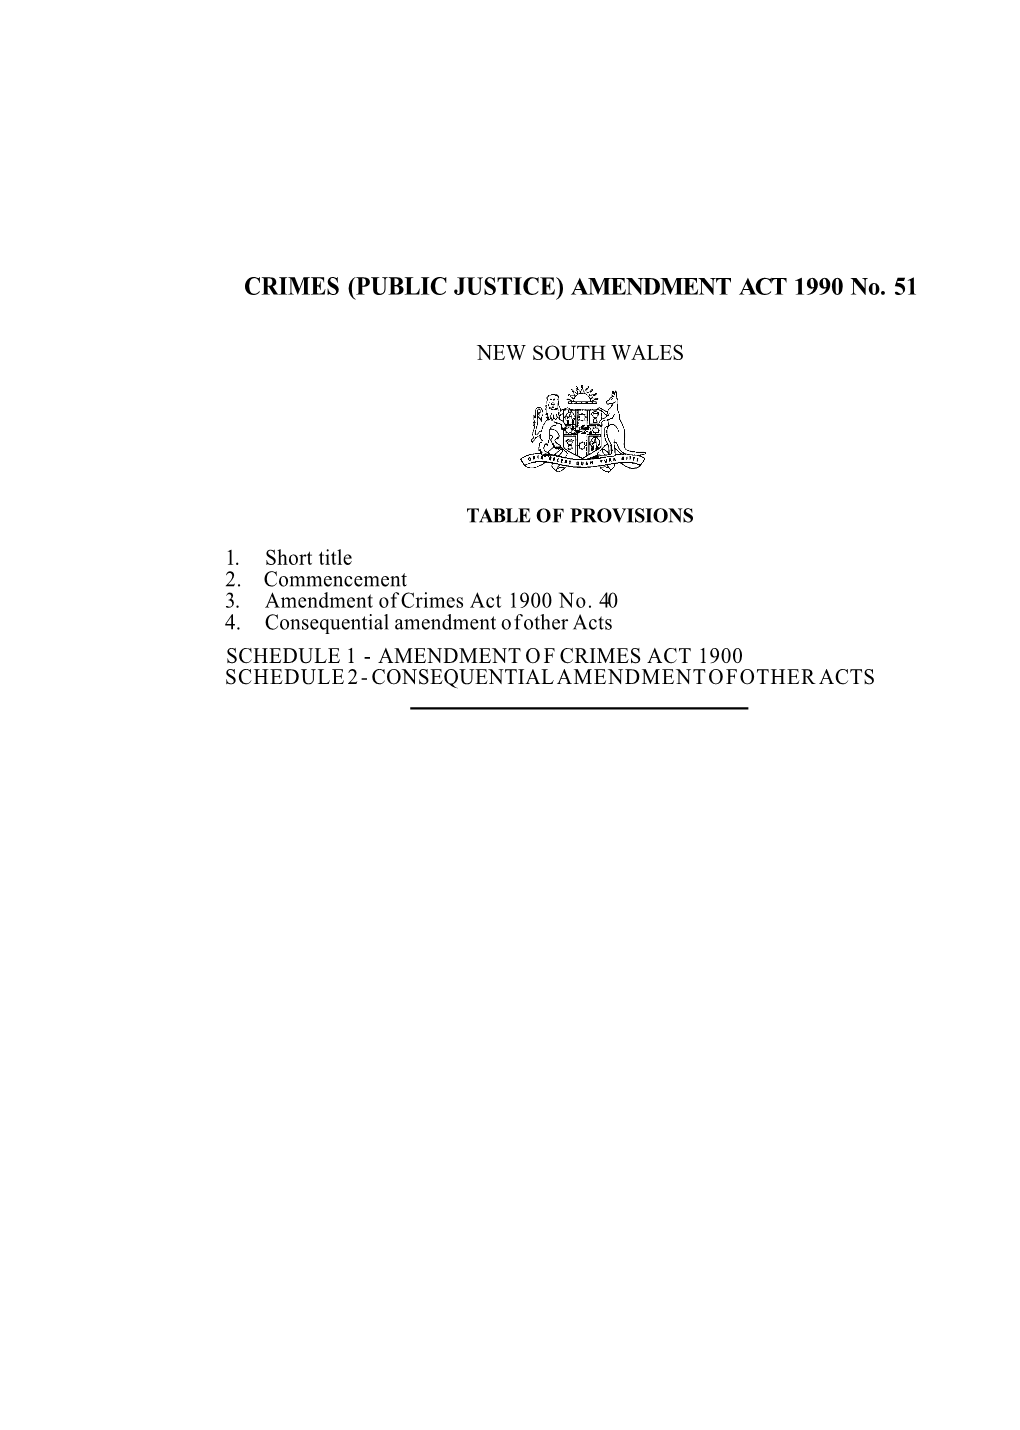 (PUBLIC JUSTICE) AMENDMENT ACT 1990 No. 51